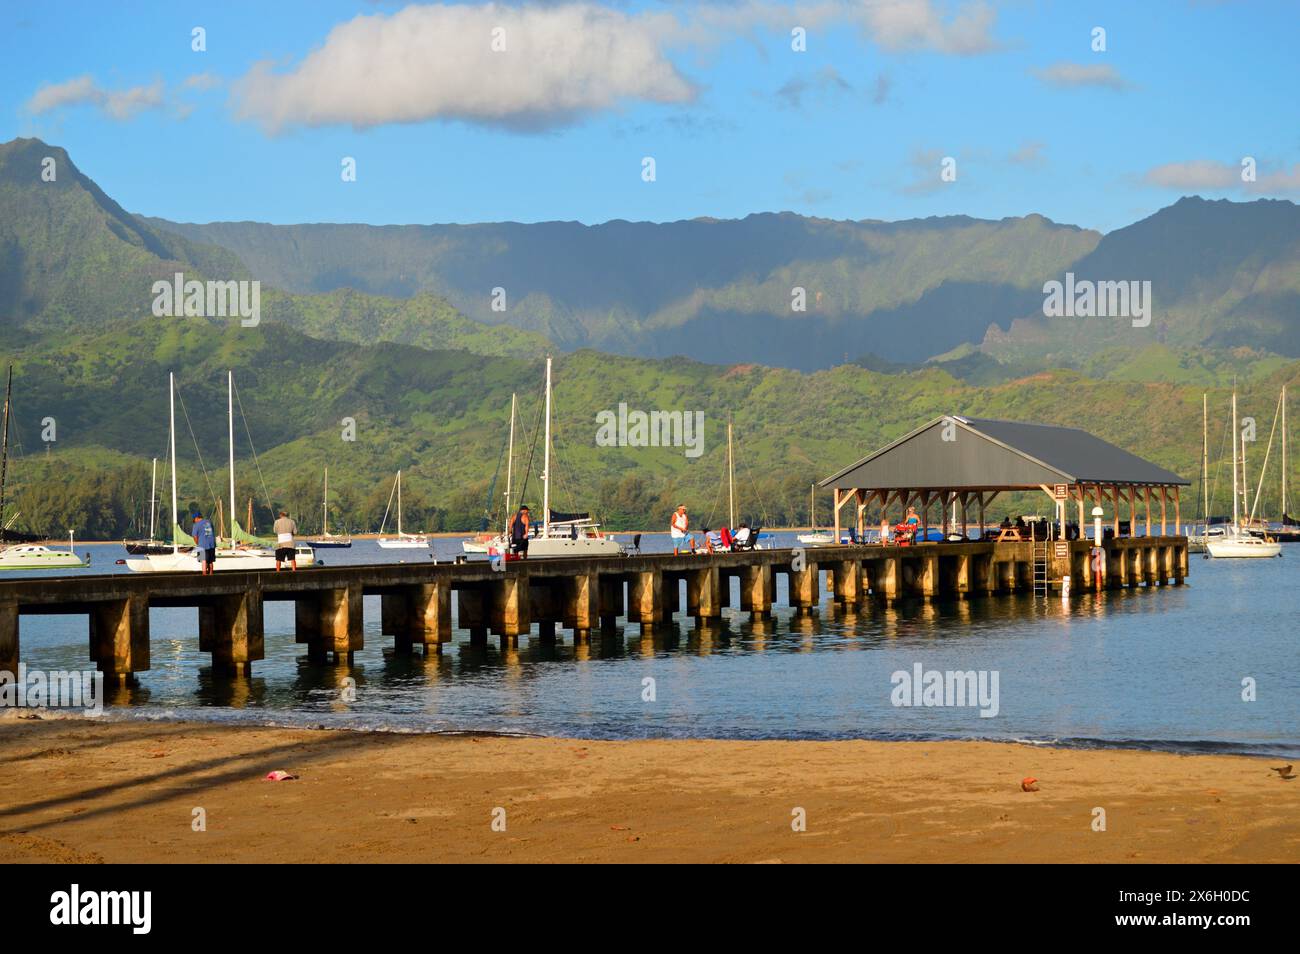 Die Menschen genießen es, auf einem Pier in Hanalei Hawaii auf Kauai zu spazieren und einen Blick auf die Hanalei Bay, die umliegenden Berge und Segelboote zu werfen Stockfoto